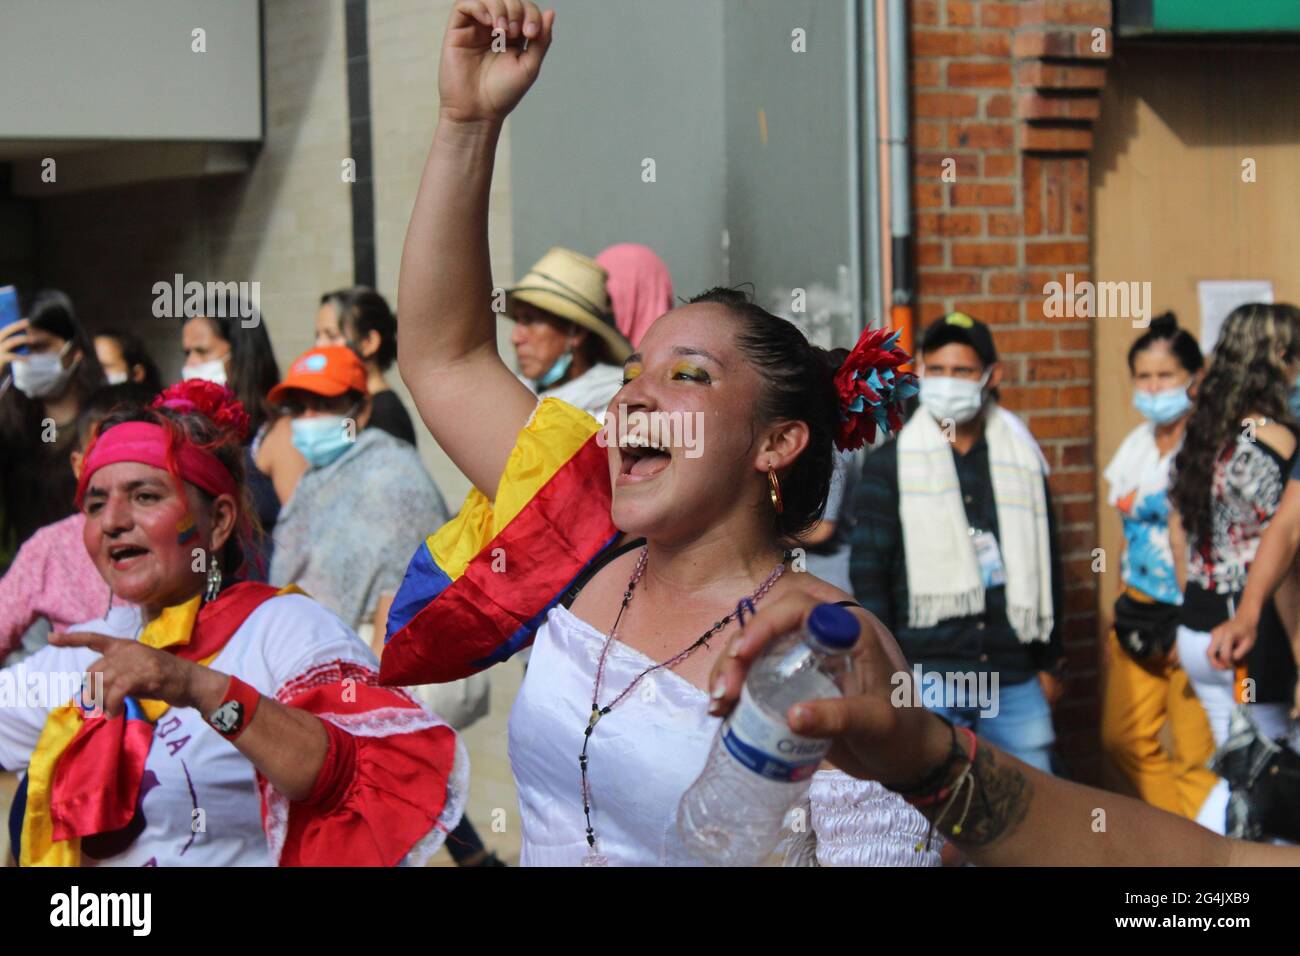 Il 3 maggio 20201 migliaia di contadini, indigeni e persone impegnati nell'accordo di pace di Meta e Guaviare decisero di lasciare i territori nella città di Villavicencio per unirsi allo sciopero nazionale in Colombia. Foto Stock